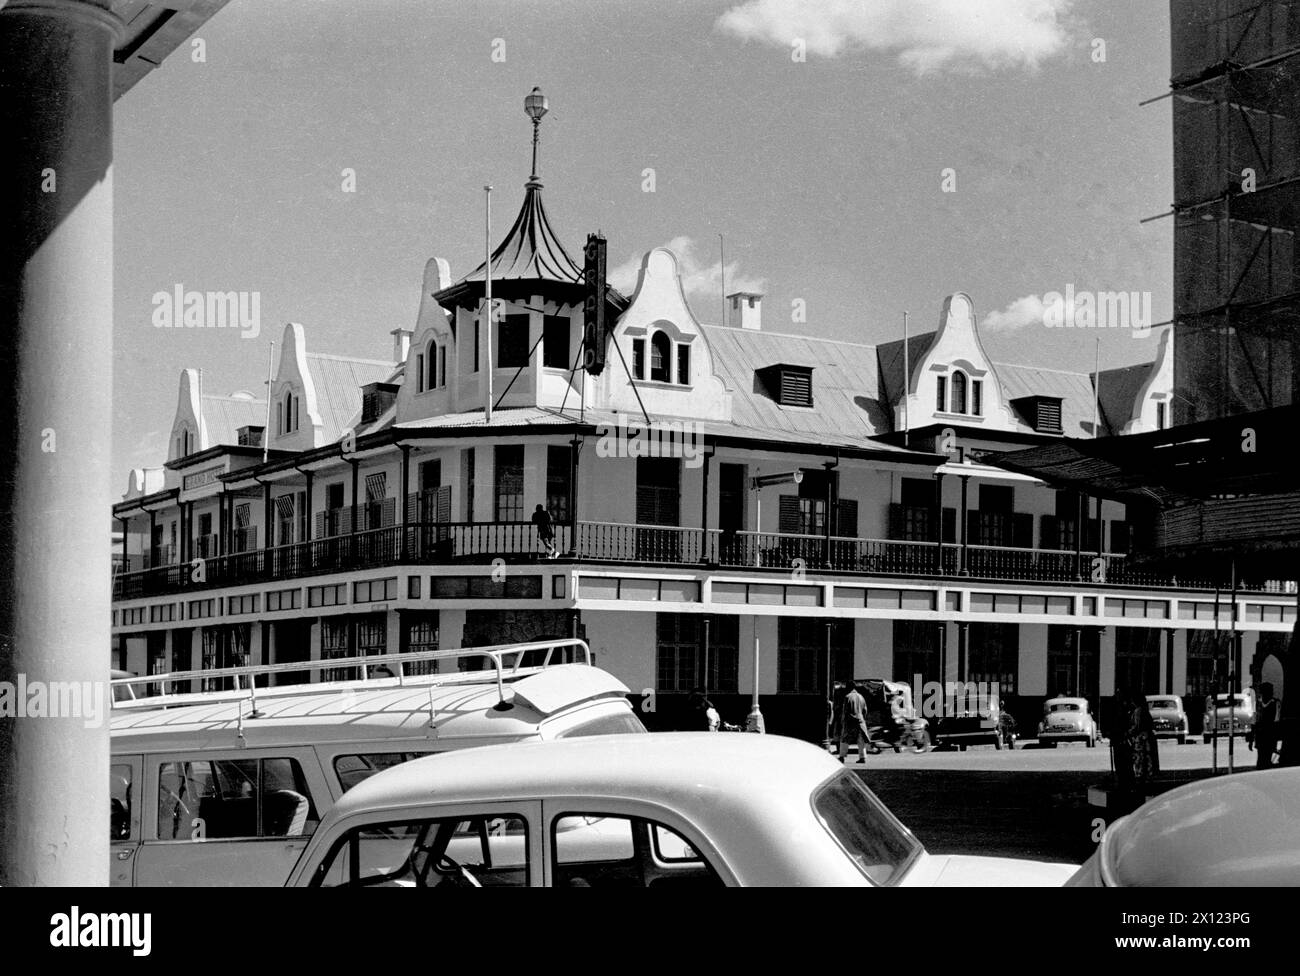 Grande Hotel in der First Street Salisbury Rhodesia, jetzt Harare Simbabwe. Das Colonial Era Building wurde 1914 von James Cope-Christie und Thomas Sladden entworfen. Vintage- oder Historic Schwarzweiß- oder Schwarzweißbild c1960 Stockfoto